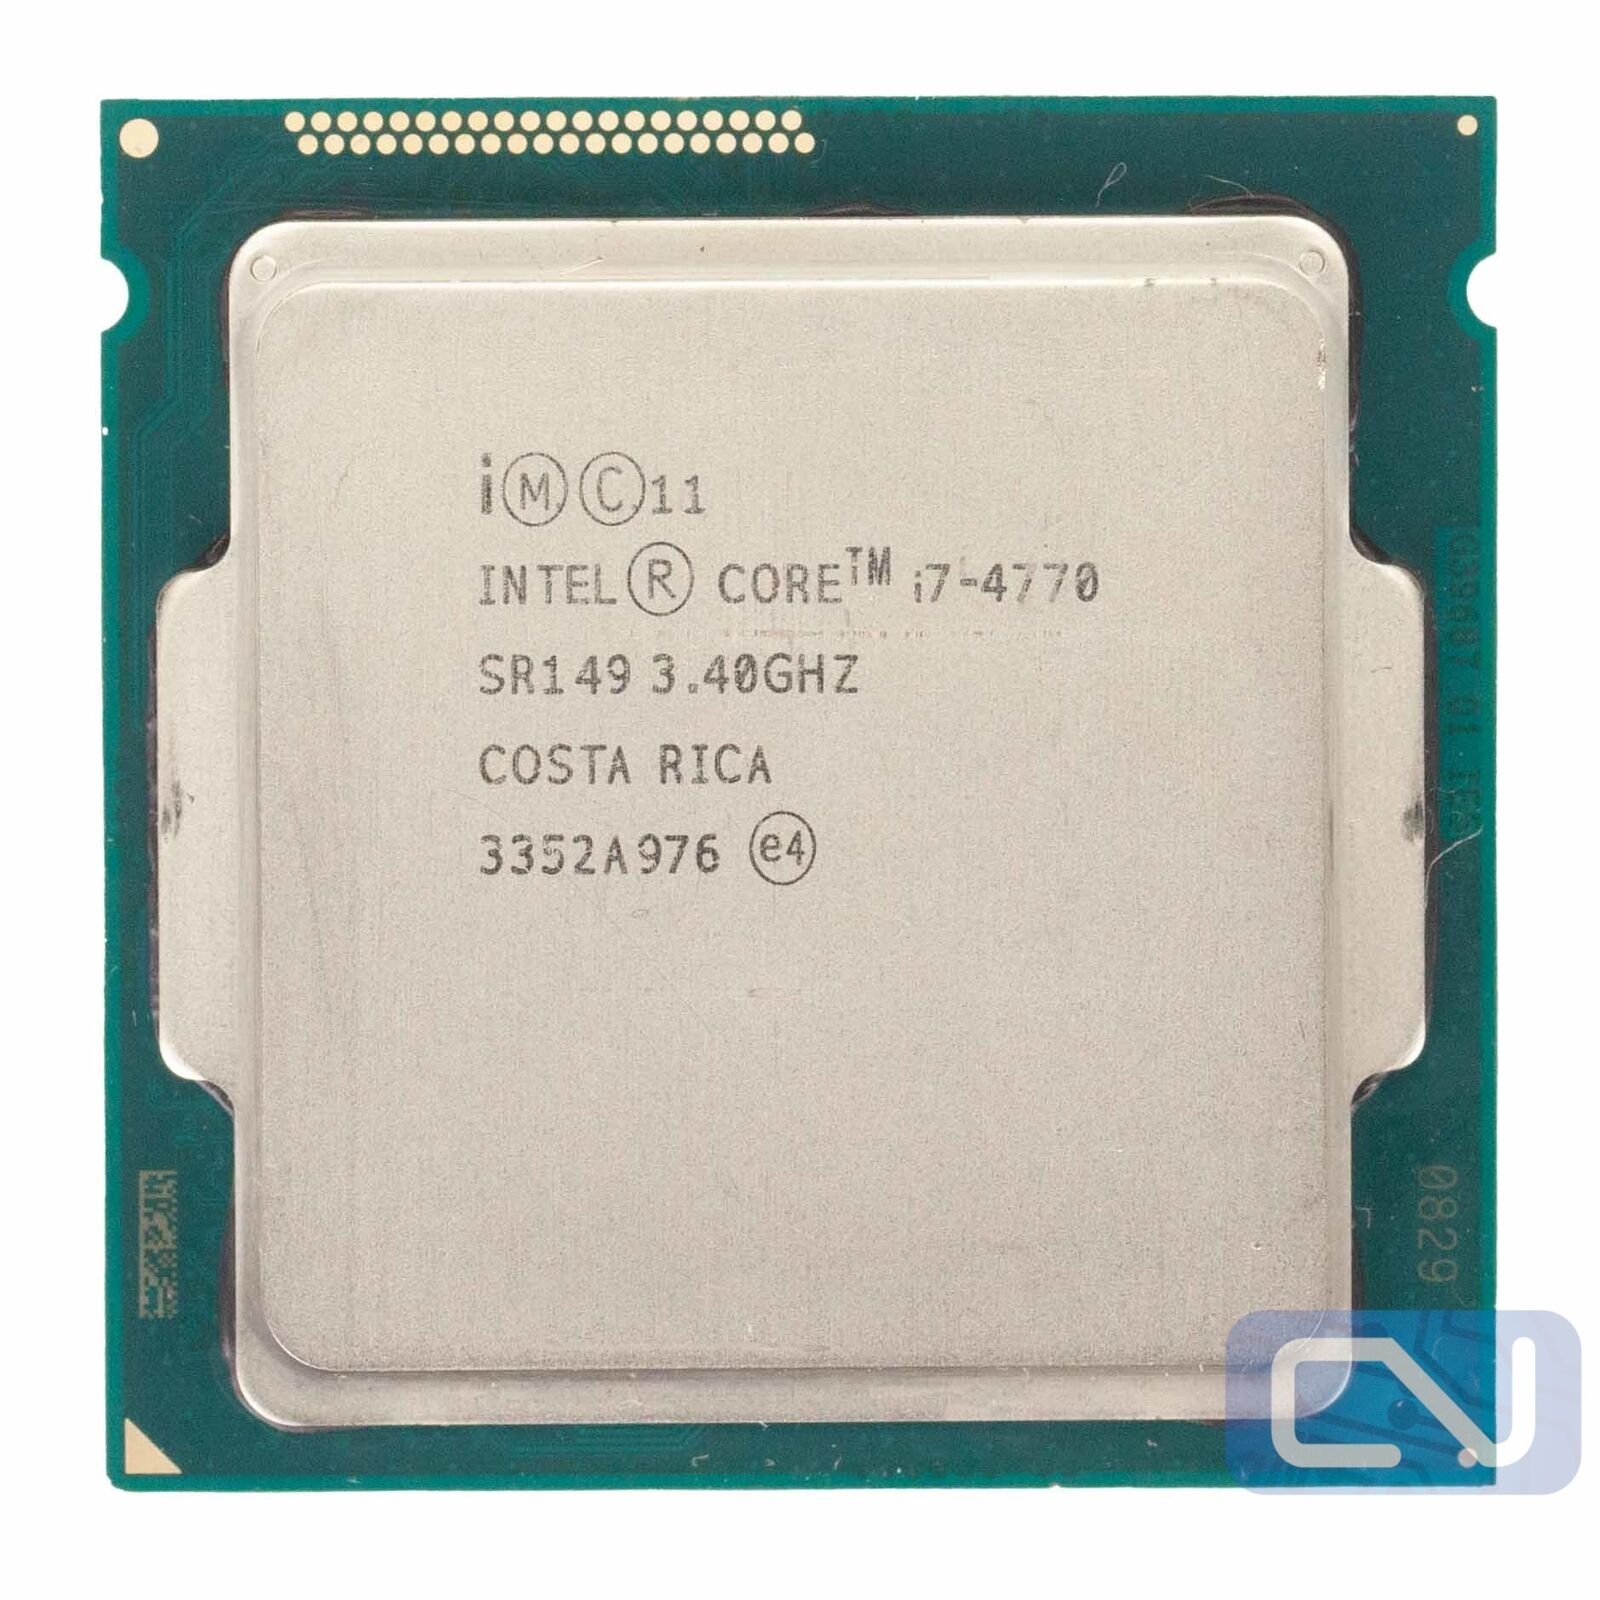 Intel Core i7-4770 3.40GHz 8MB 5GT/s SR149 LGA1150 B Grade CPU Processor